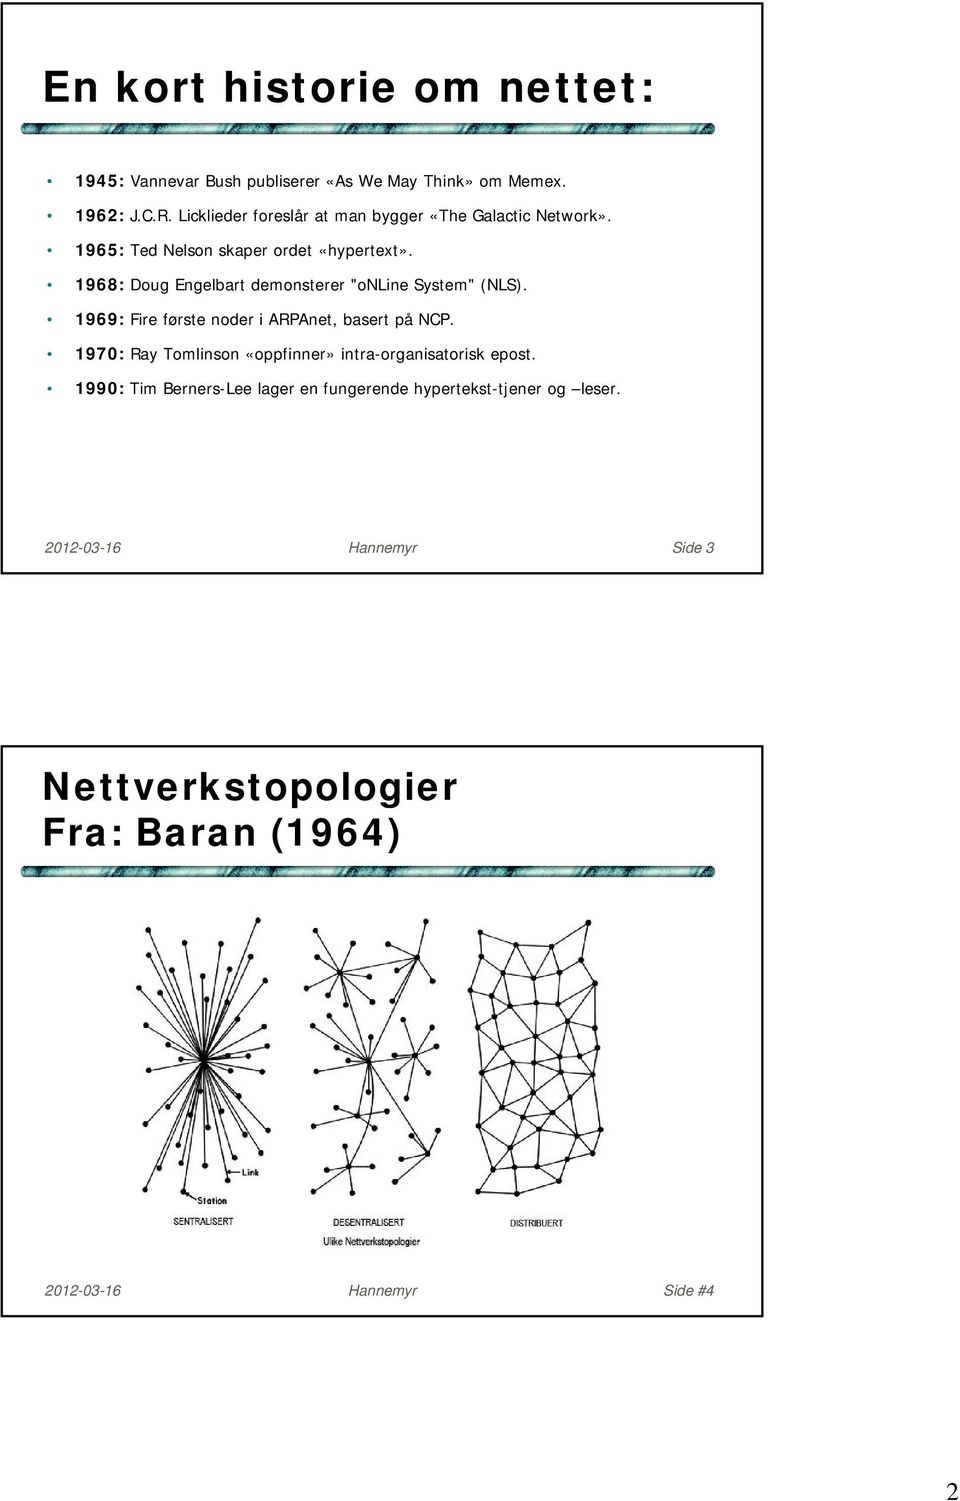 1968: Doug Engelbart demonsterer "online System" (NLS). 1969: Fire første noder i ARPAnet, basert på NCP.